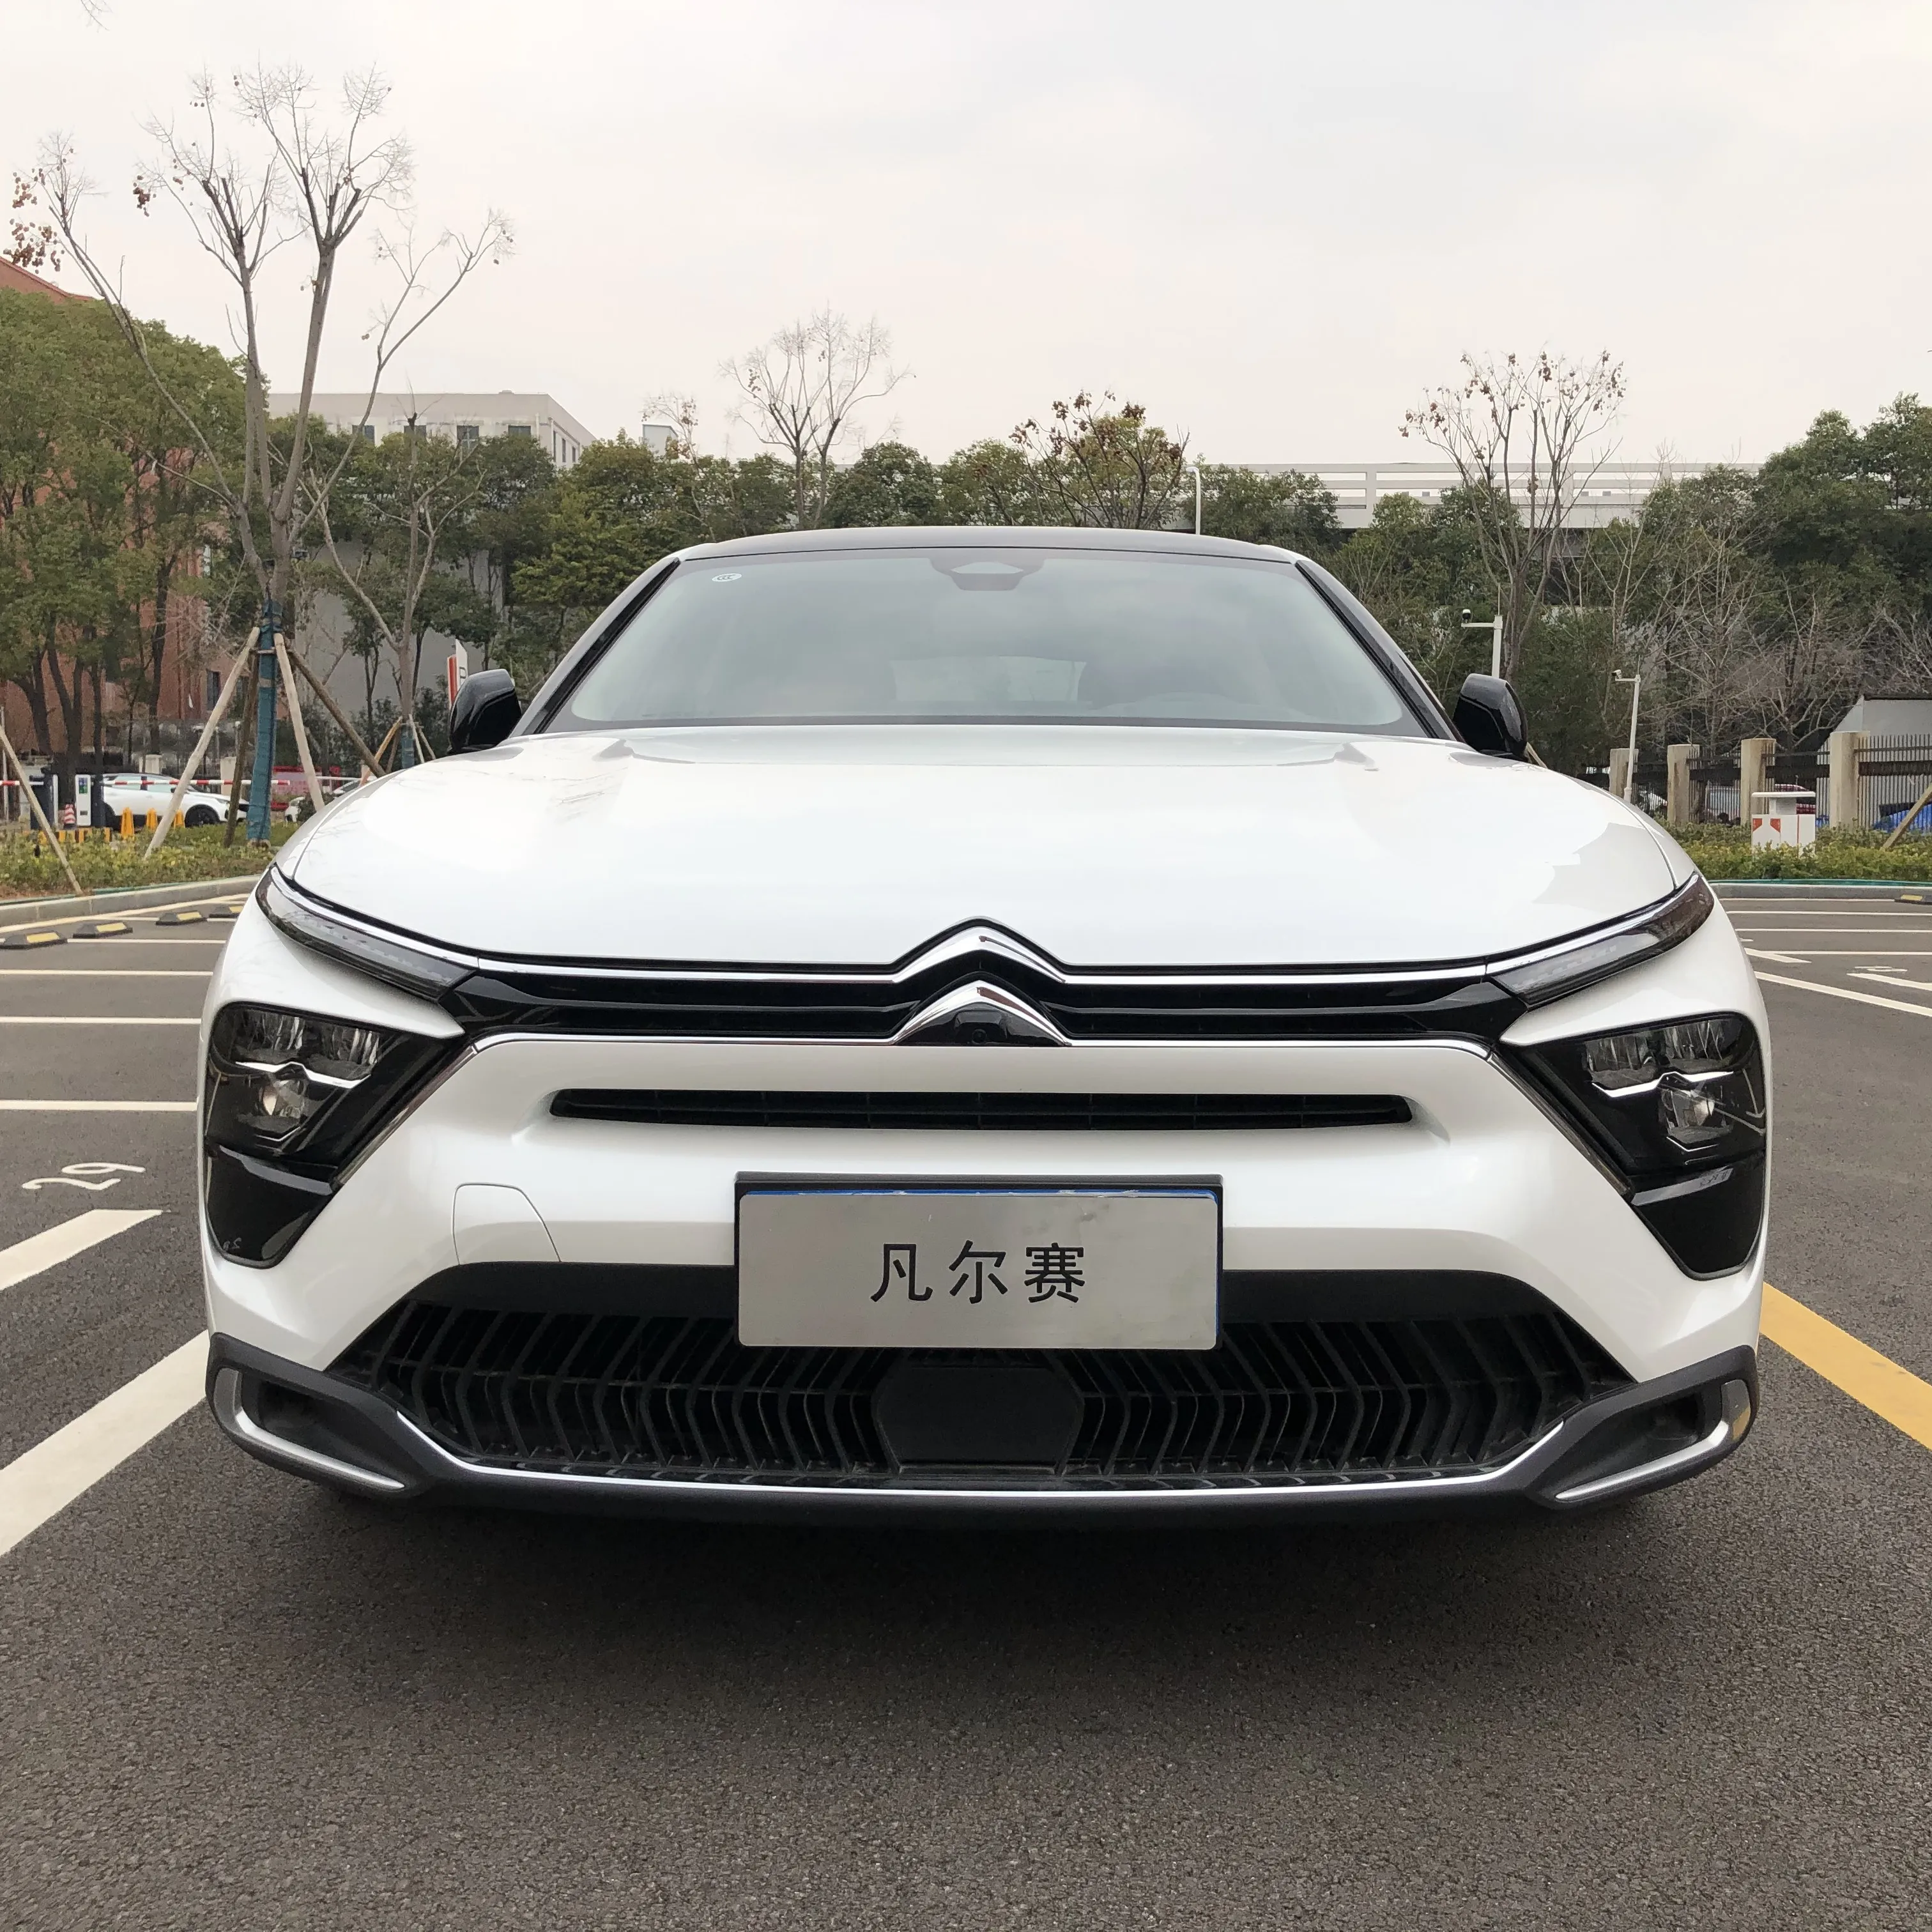 Dongfeng Gutes Aussehen Benzin Auto Limousine Gebrauchtwagen für den Familien gebrauch